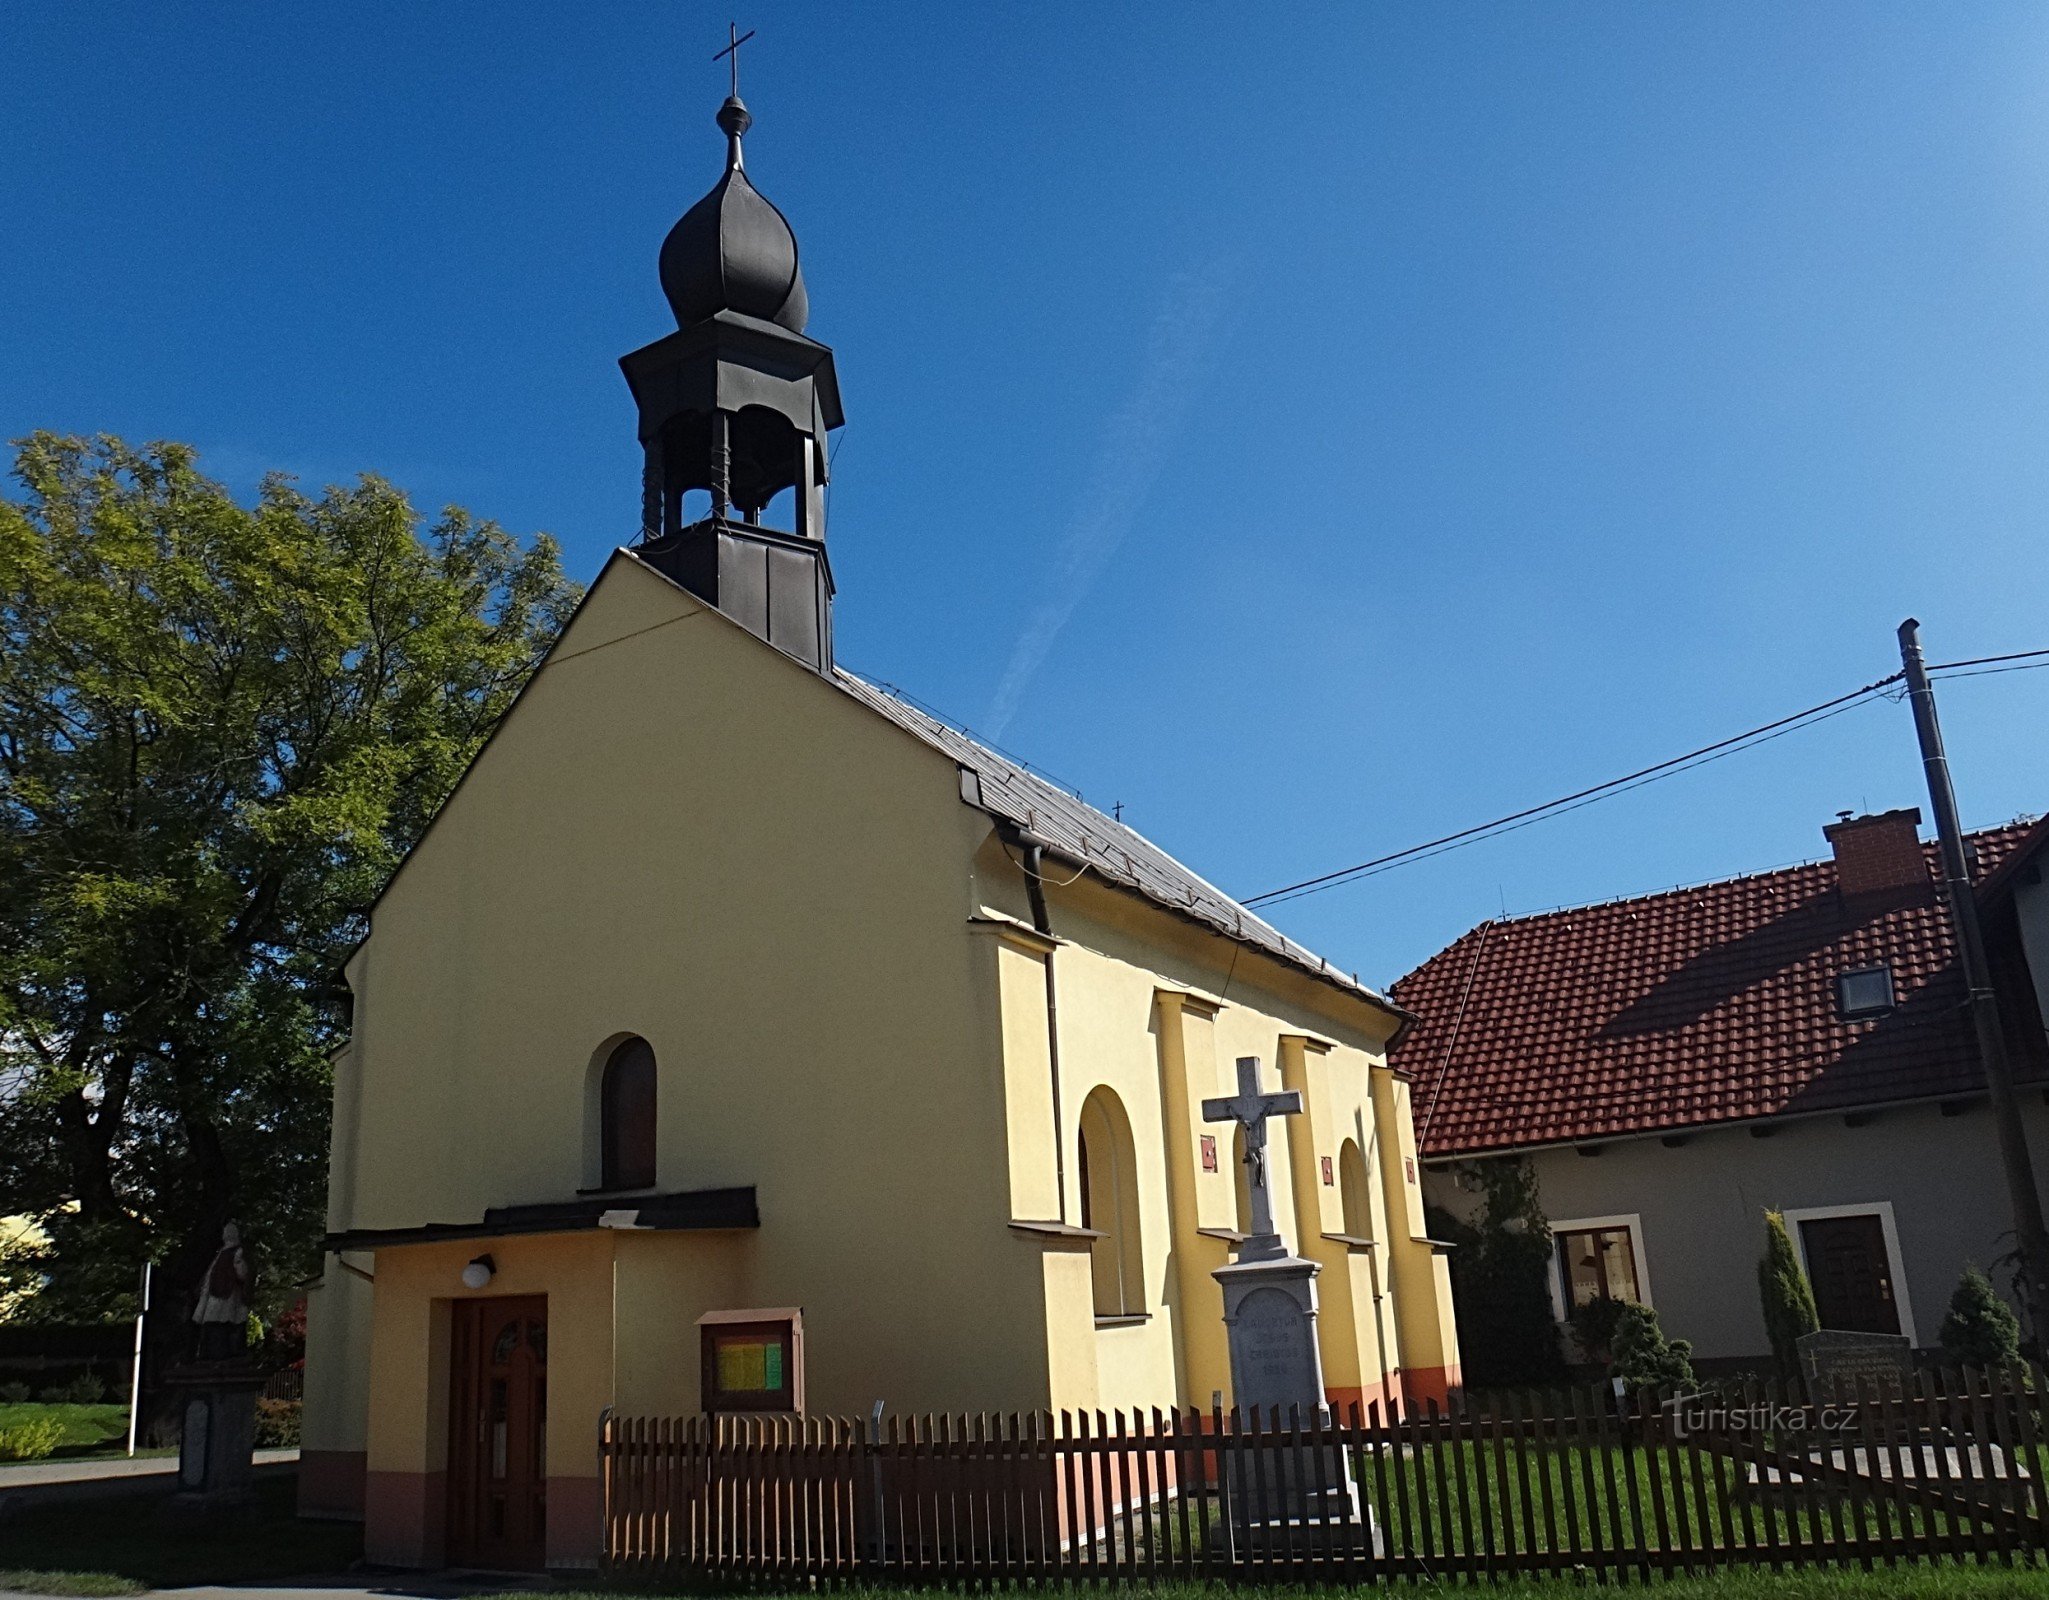 Věřňovice-kapellet St. Isidore